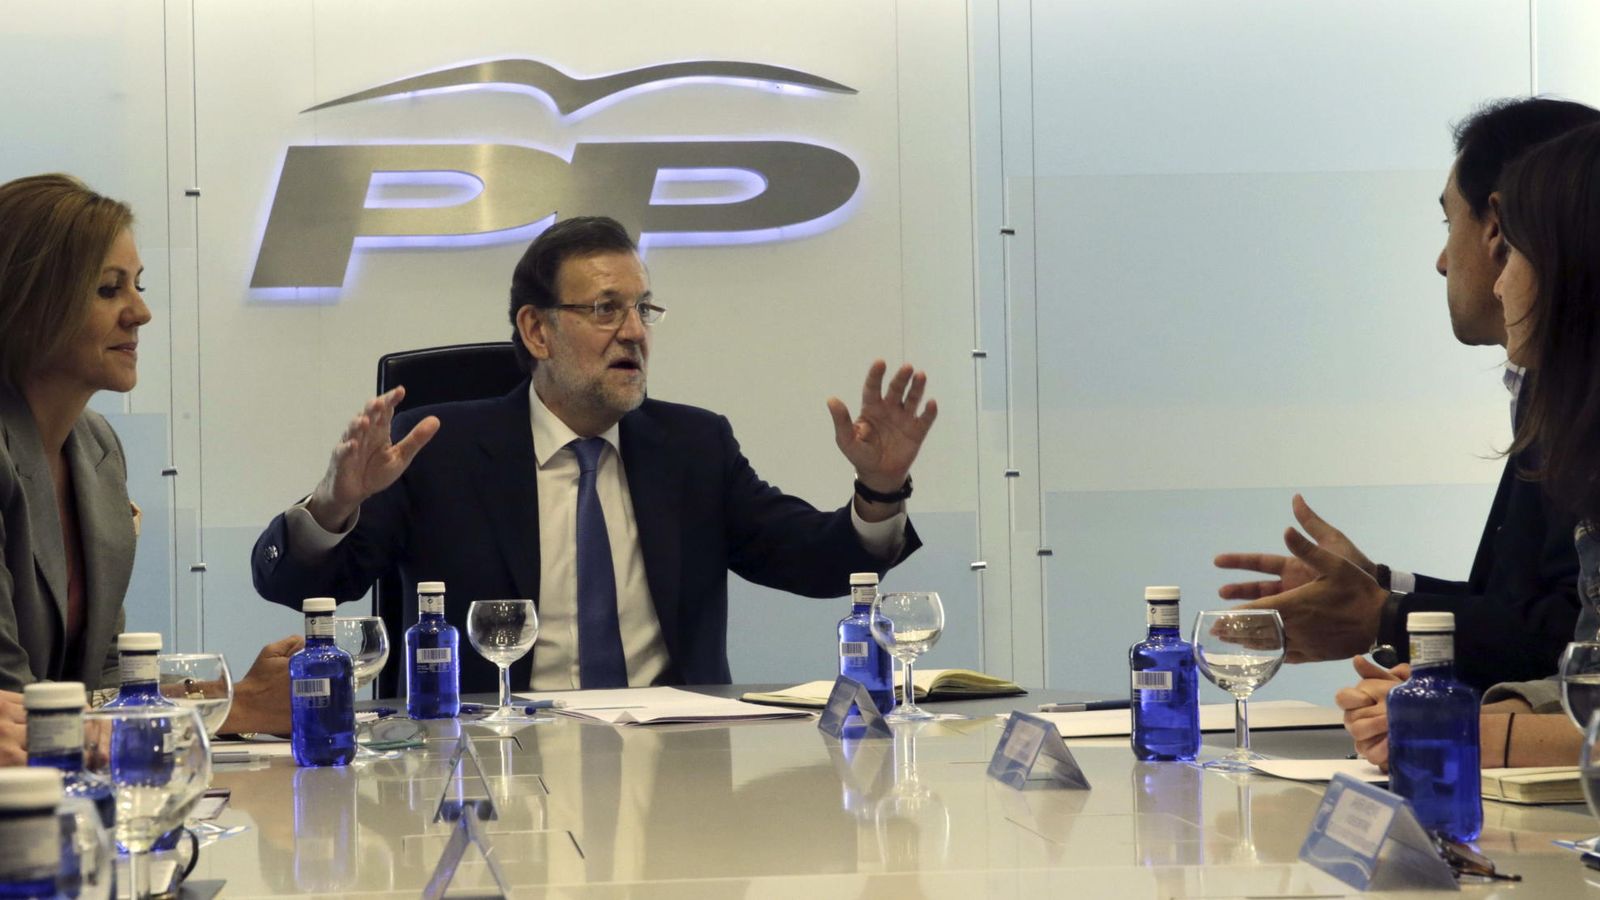 Foto: El presidente del Gobierno, Mariano Rajoy (c), en presencia de la secretaria general del PP, María Dolores de Cospedal (i), preside la primera reunión de la nueva cúpula del Partido Popular. (EFE)